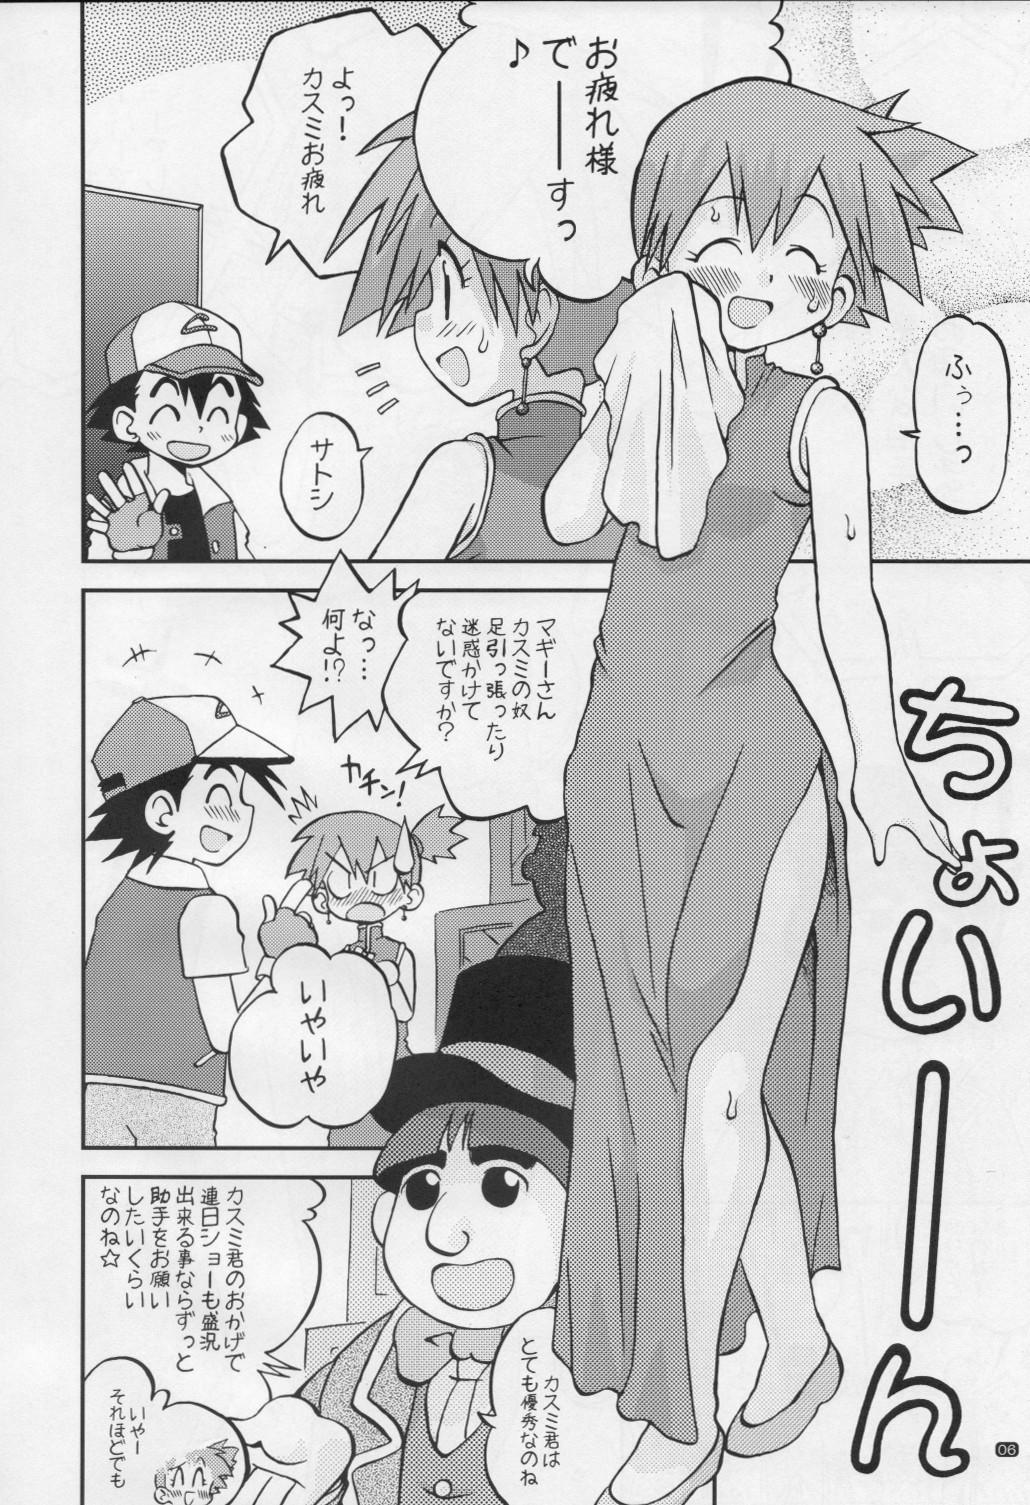 Hermana Yume no Tsubomi wa Tsubomi no Mama dakedo - Pokemon Roludo - Page 5